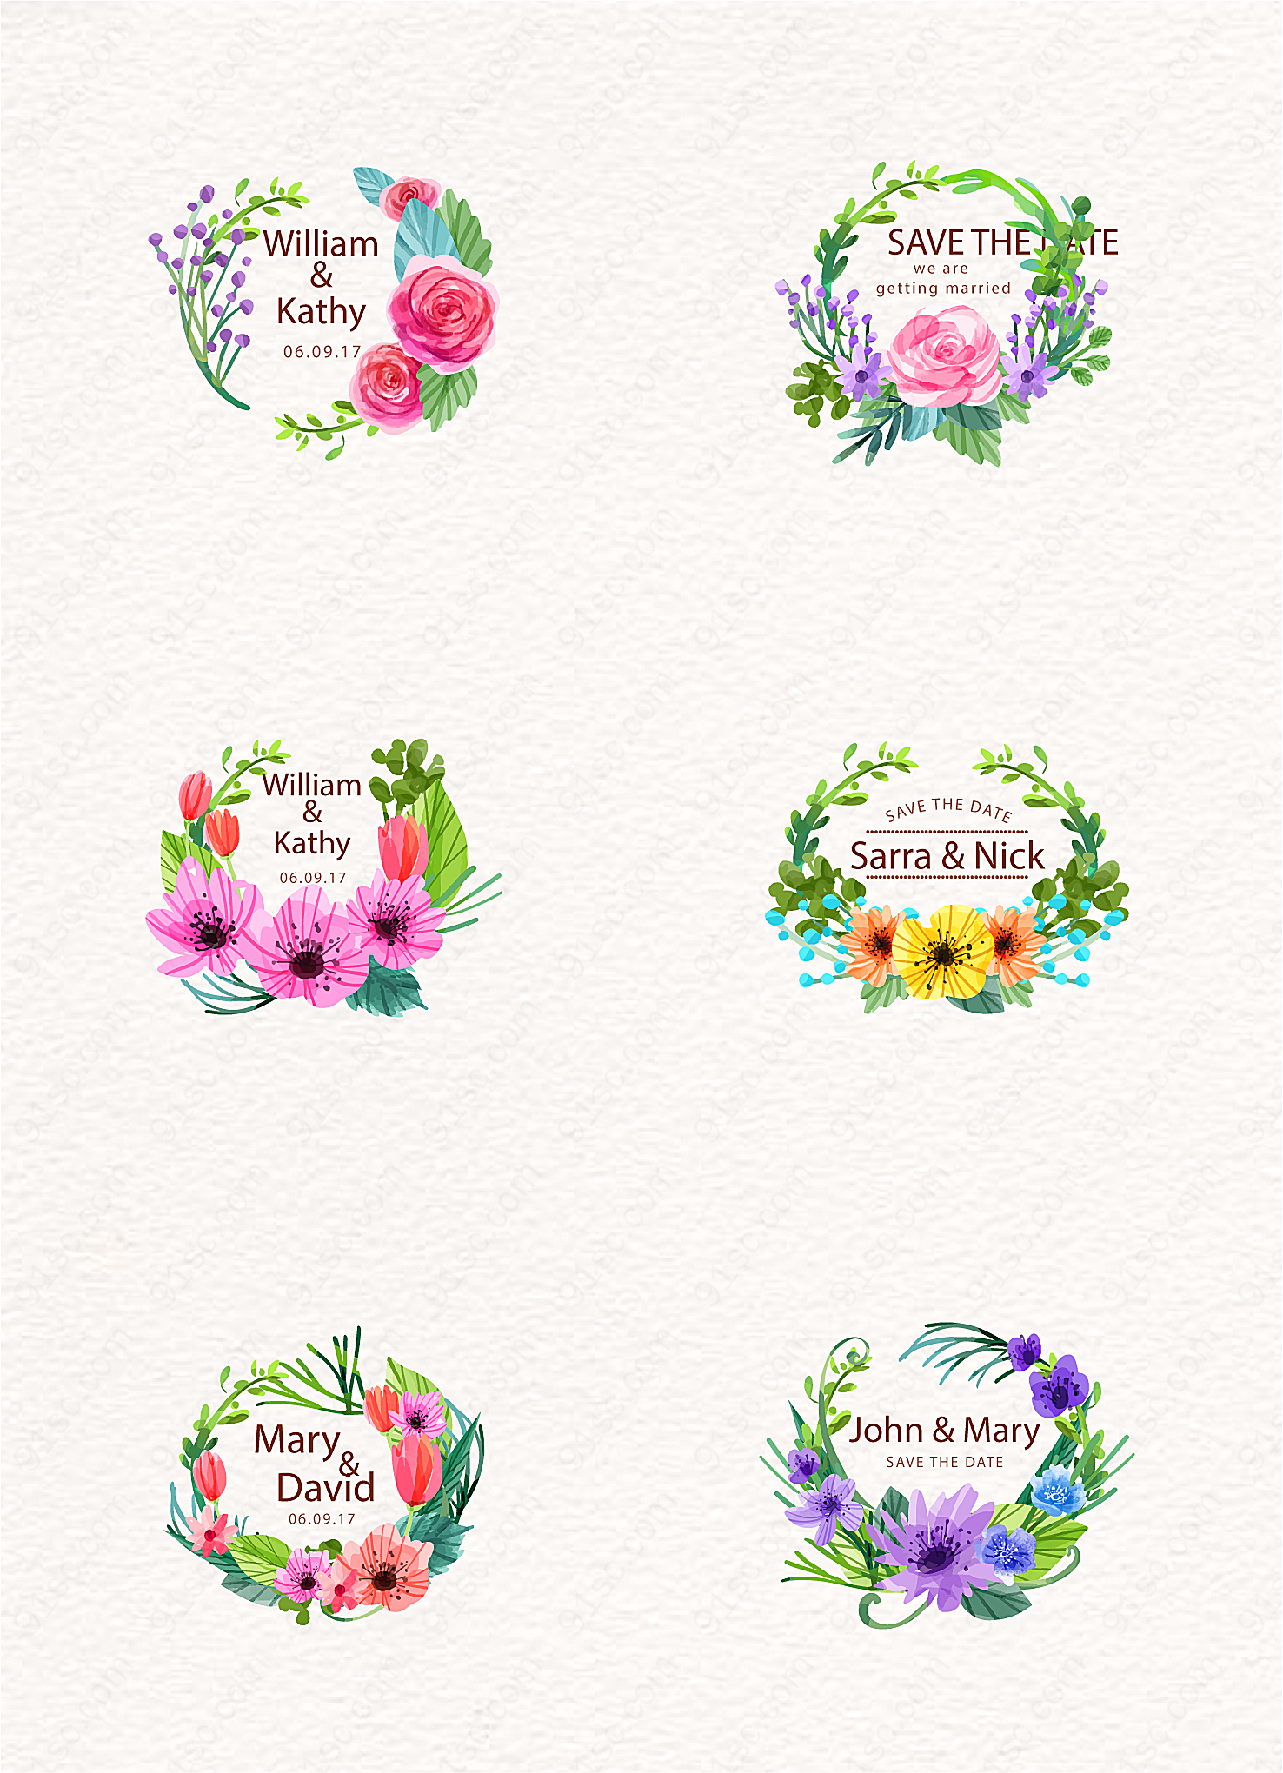 水彩绘花卉婚礼标签矢量素材设计节日促销